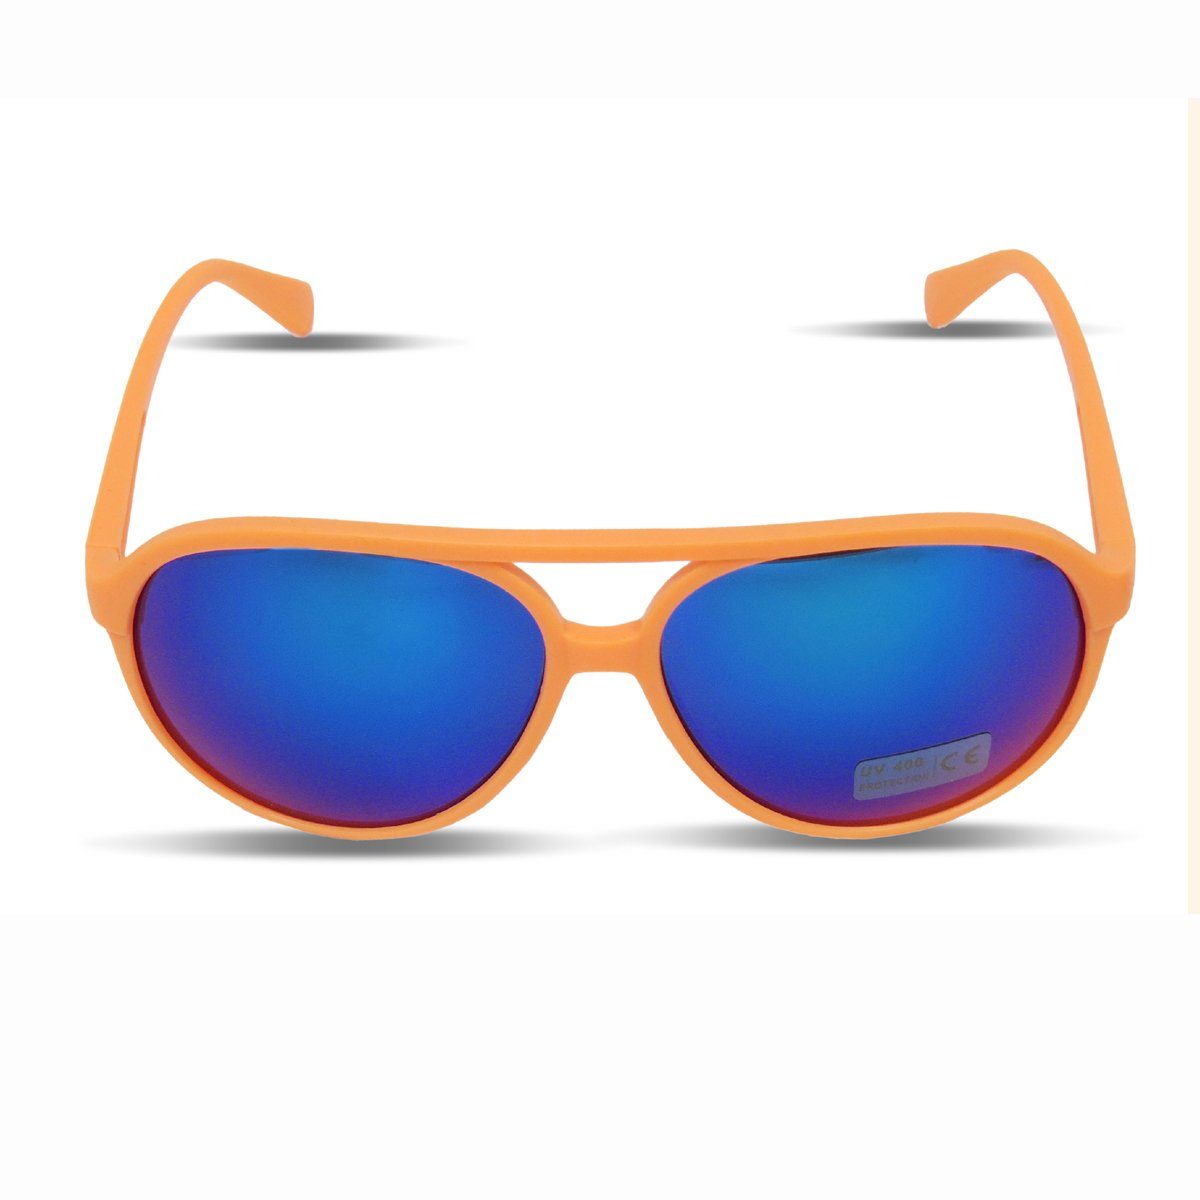 Sonia Originelli Sonnenbrille Sonnenbrille Neon Knallig Verspiegelt Fun Brille Onesize, Gläser: Verspiegelt orange